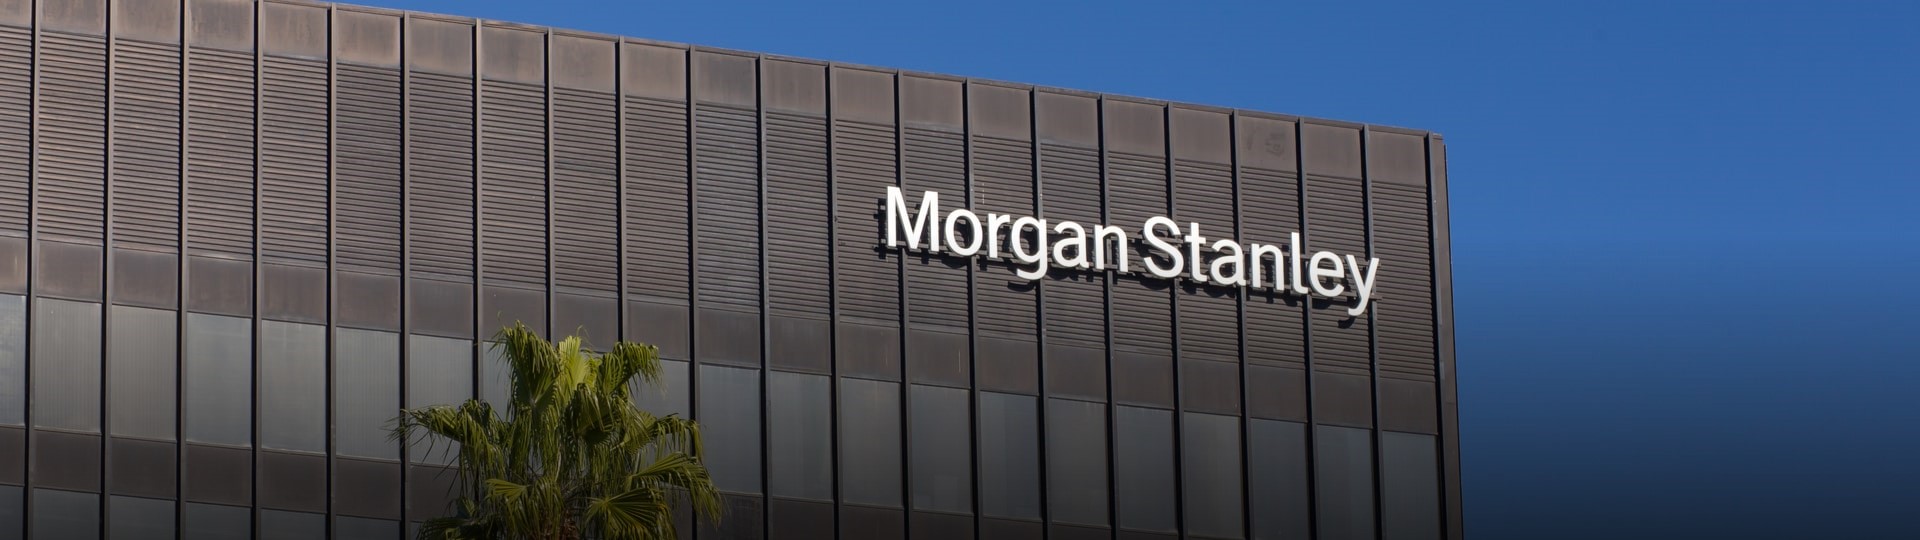 Americká banka Morgan Stanley zvýšila čtvrtletní zisk o 12 procent